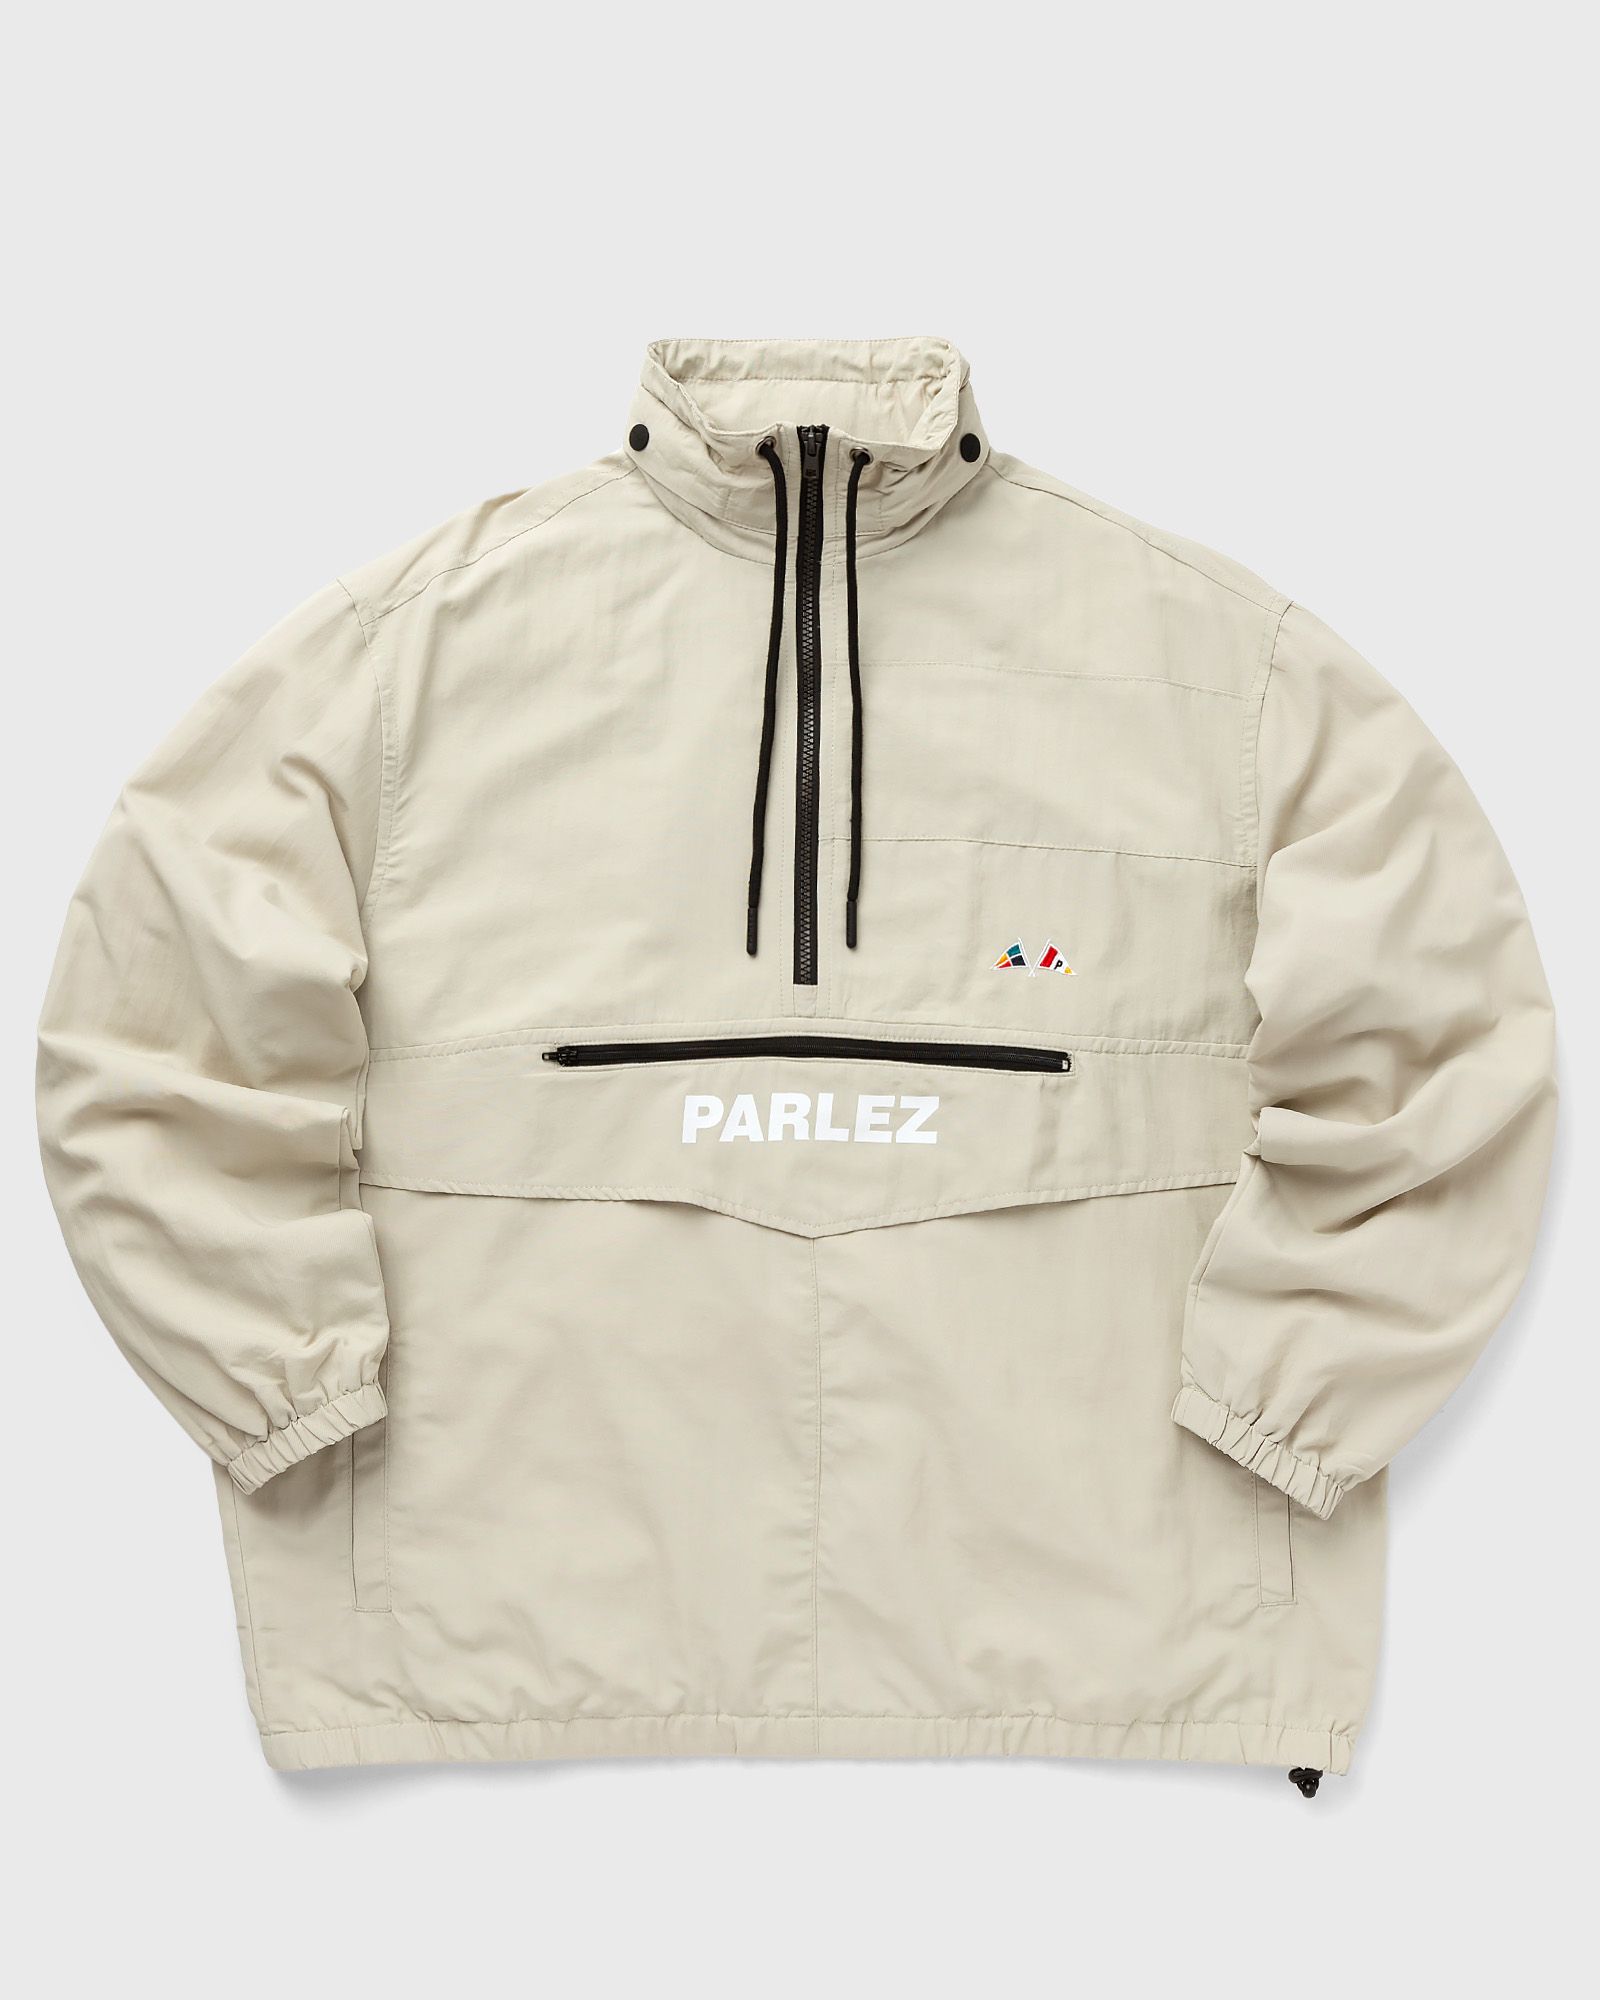 Parlez - flyer jacket men half-zips|windbreaker beige in größe:m